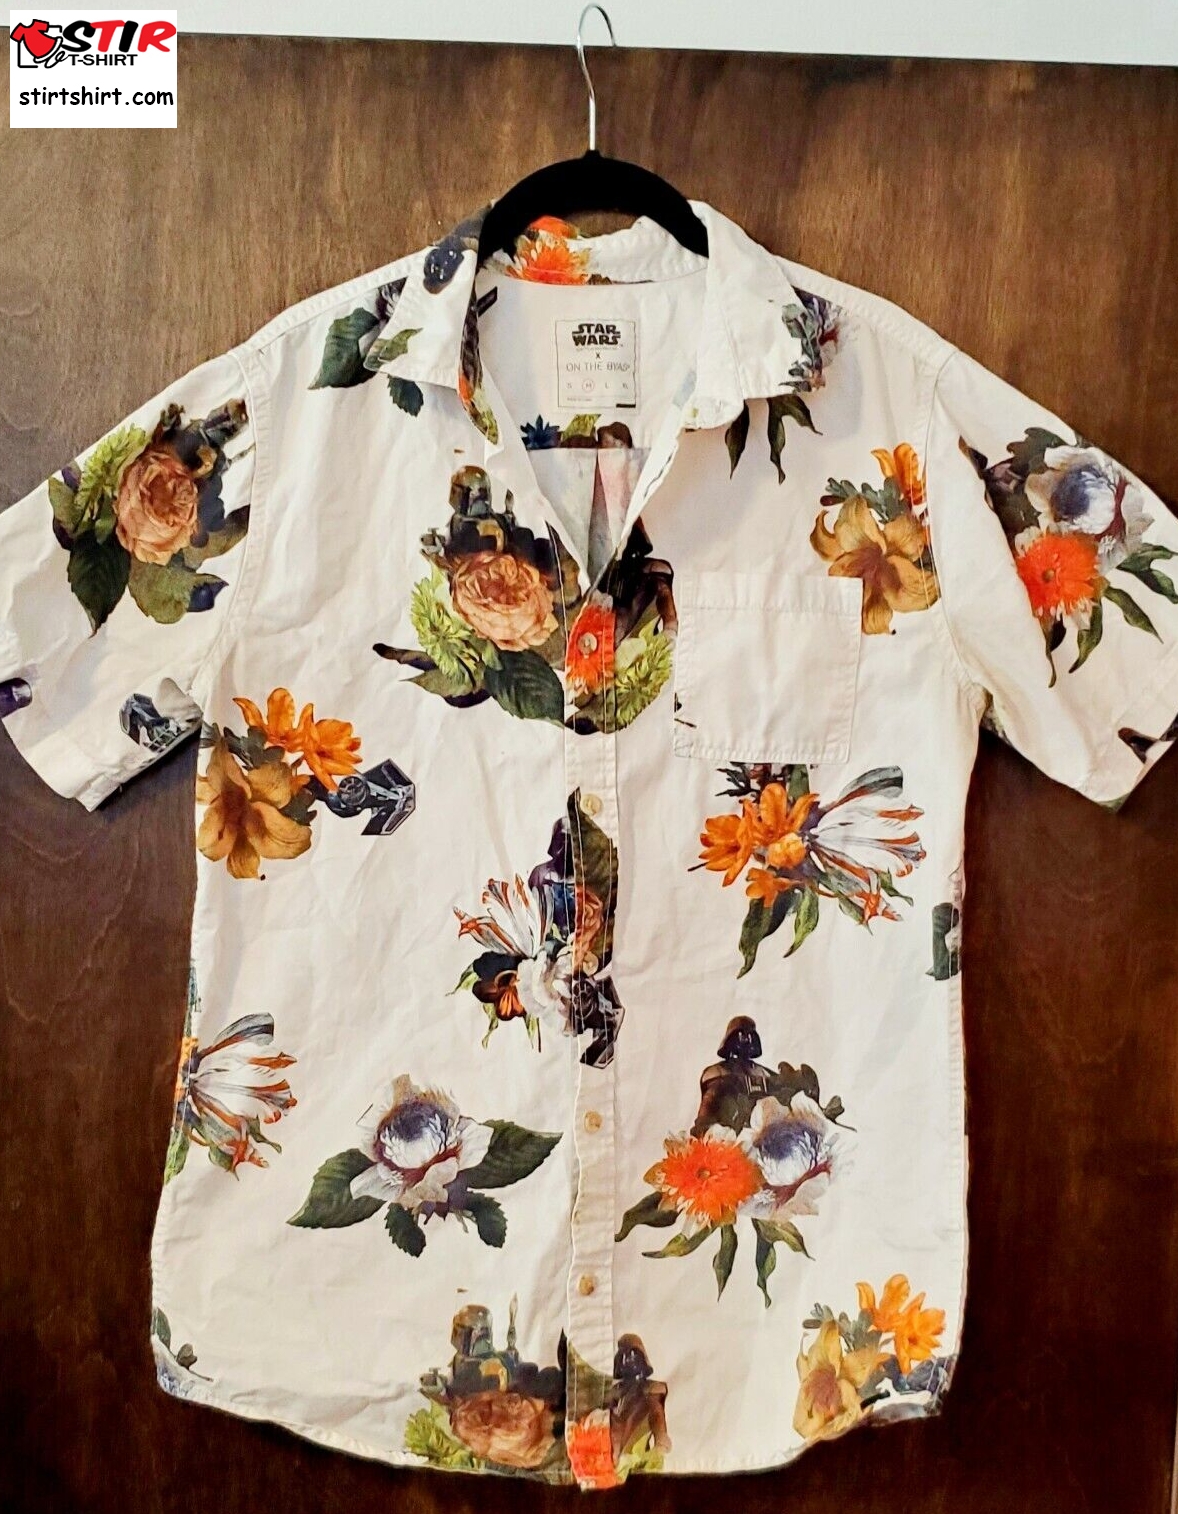 Star Wars Button Hawaiian Shirt On The Byas Vader Boba Fett Tie Fighter